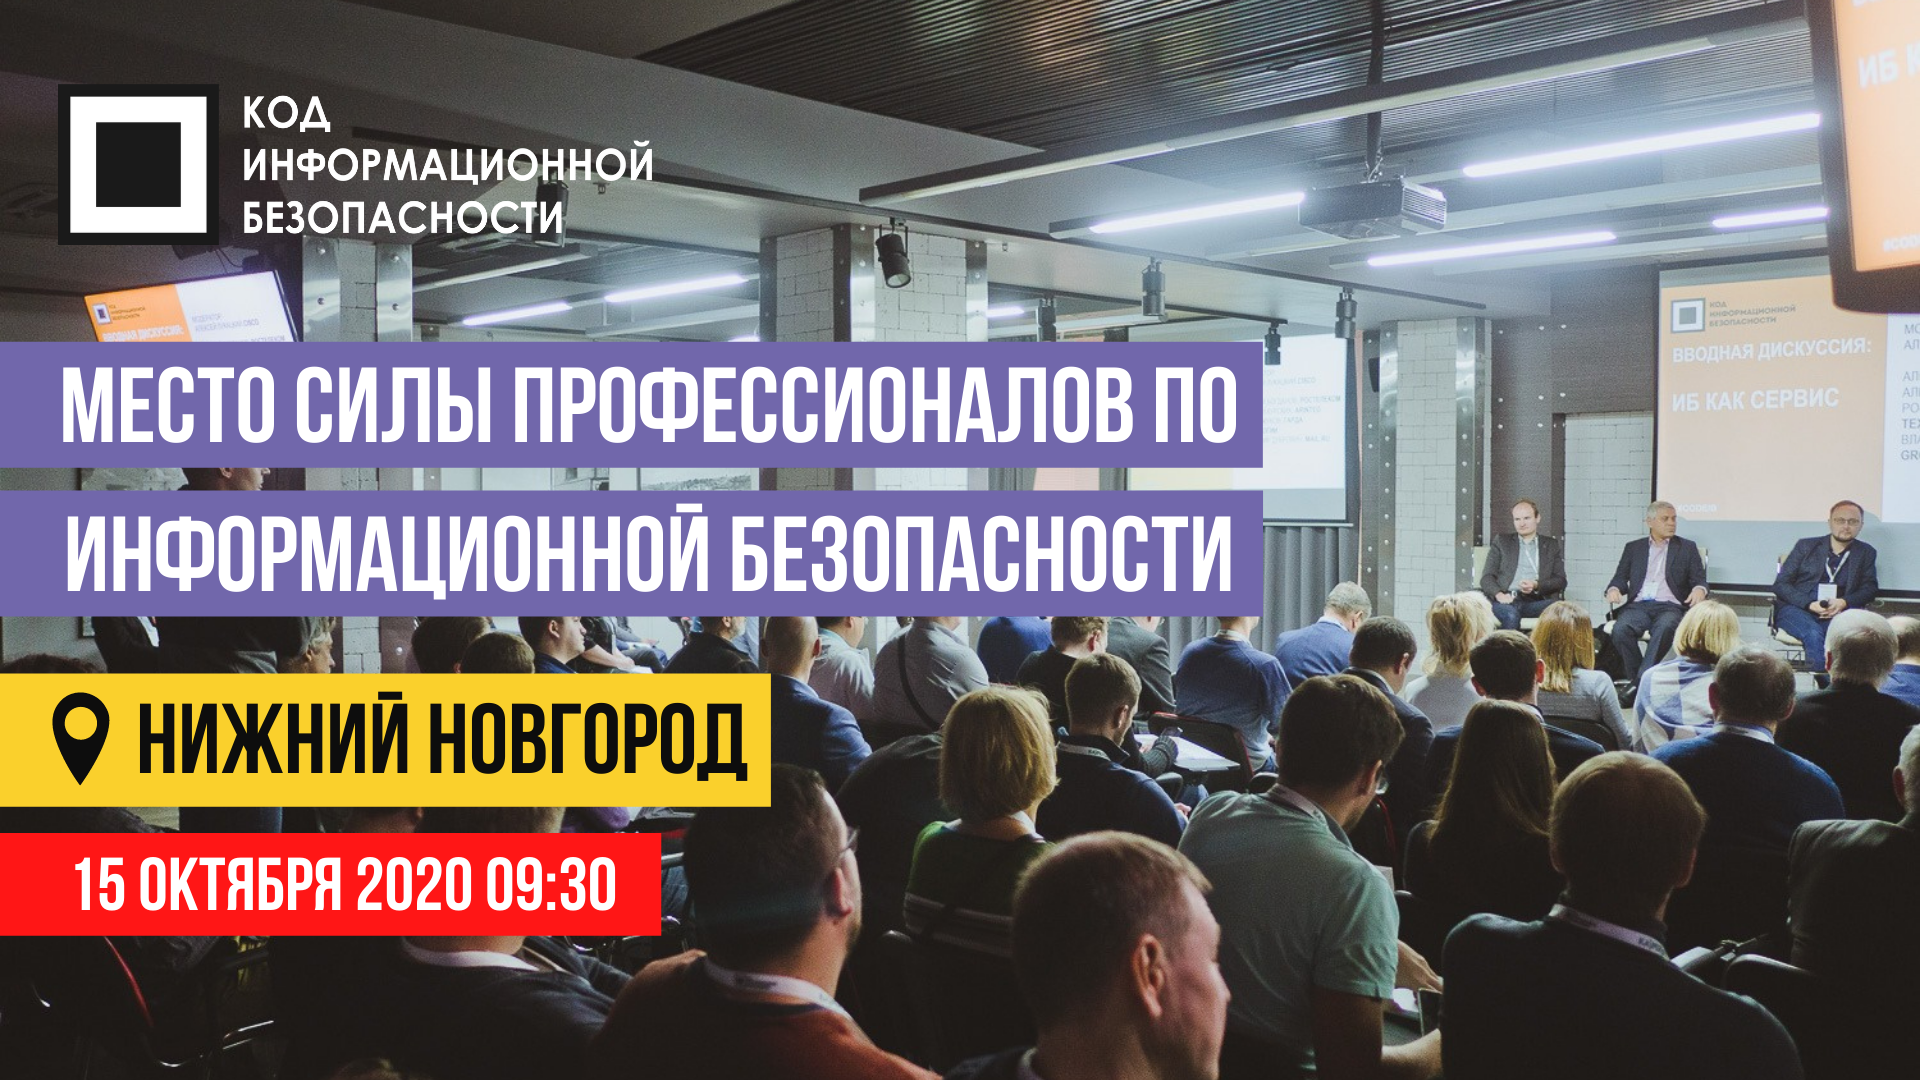 В Нижнем Новгороде состоится живая конференция по информационной безопасности Код ИБ